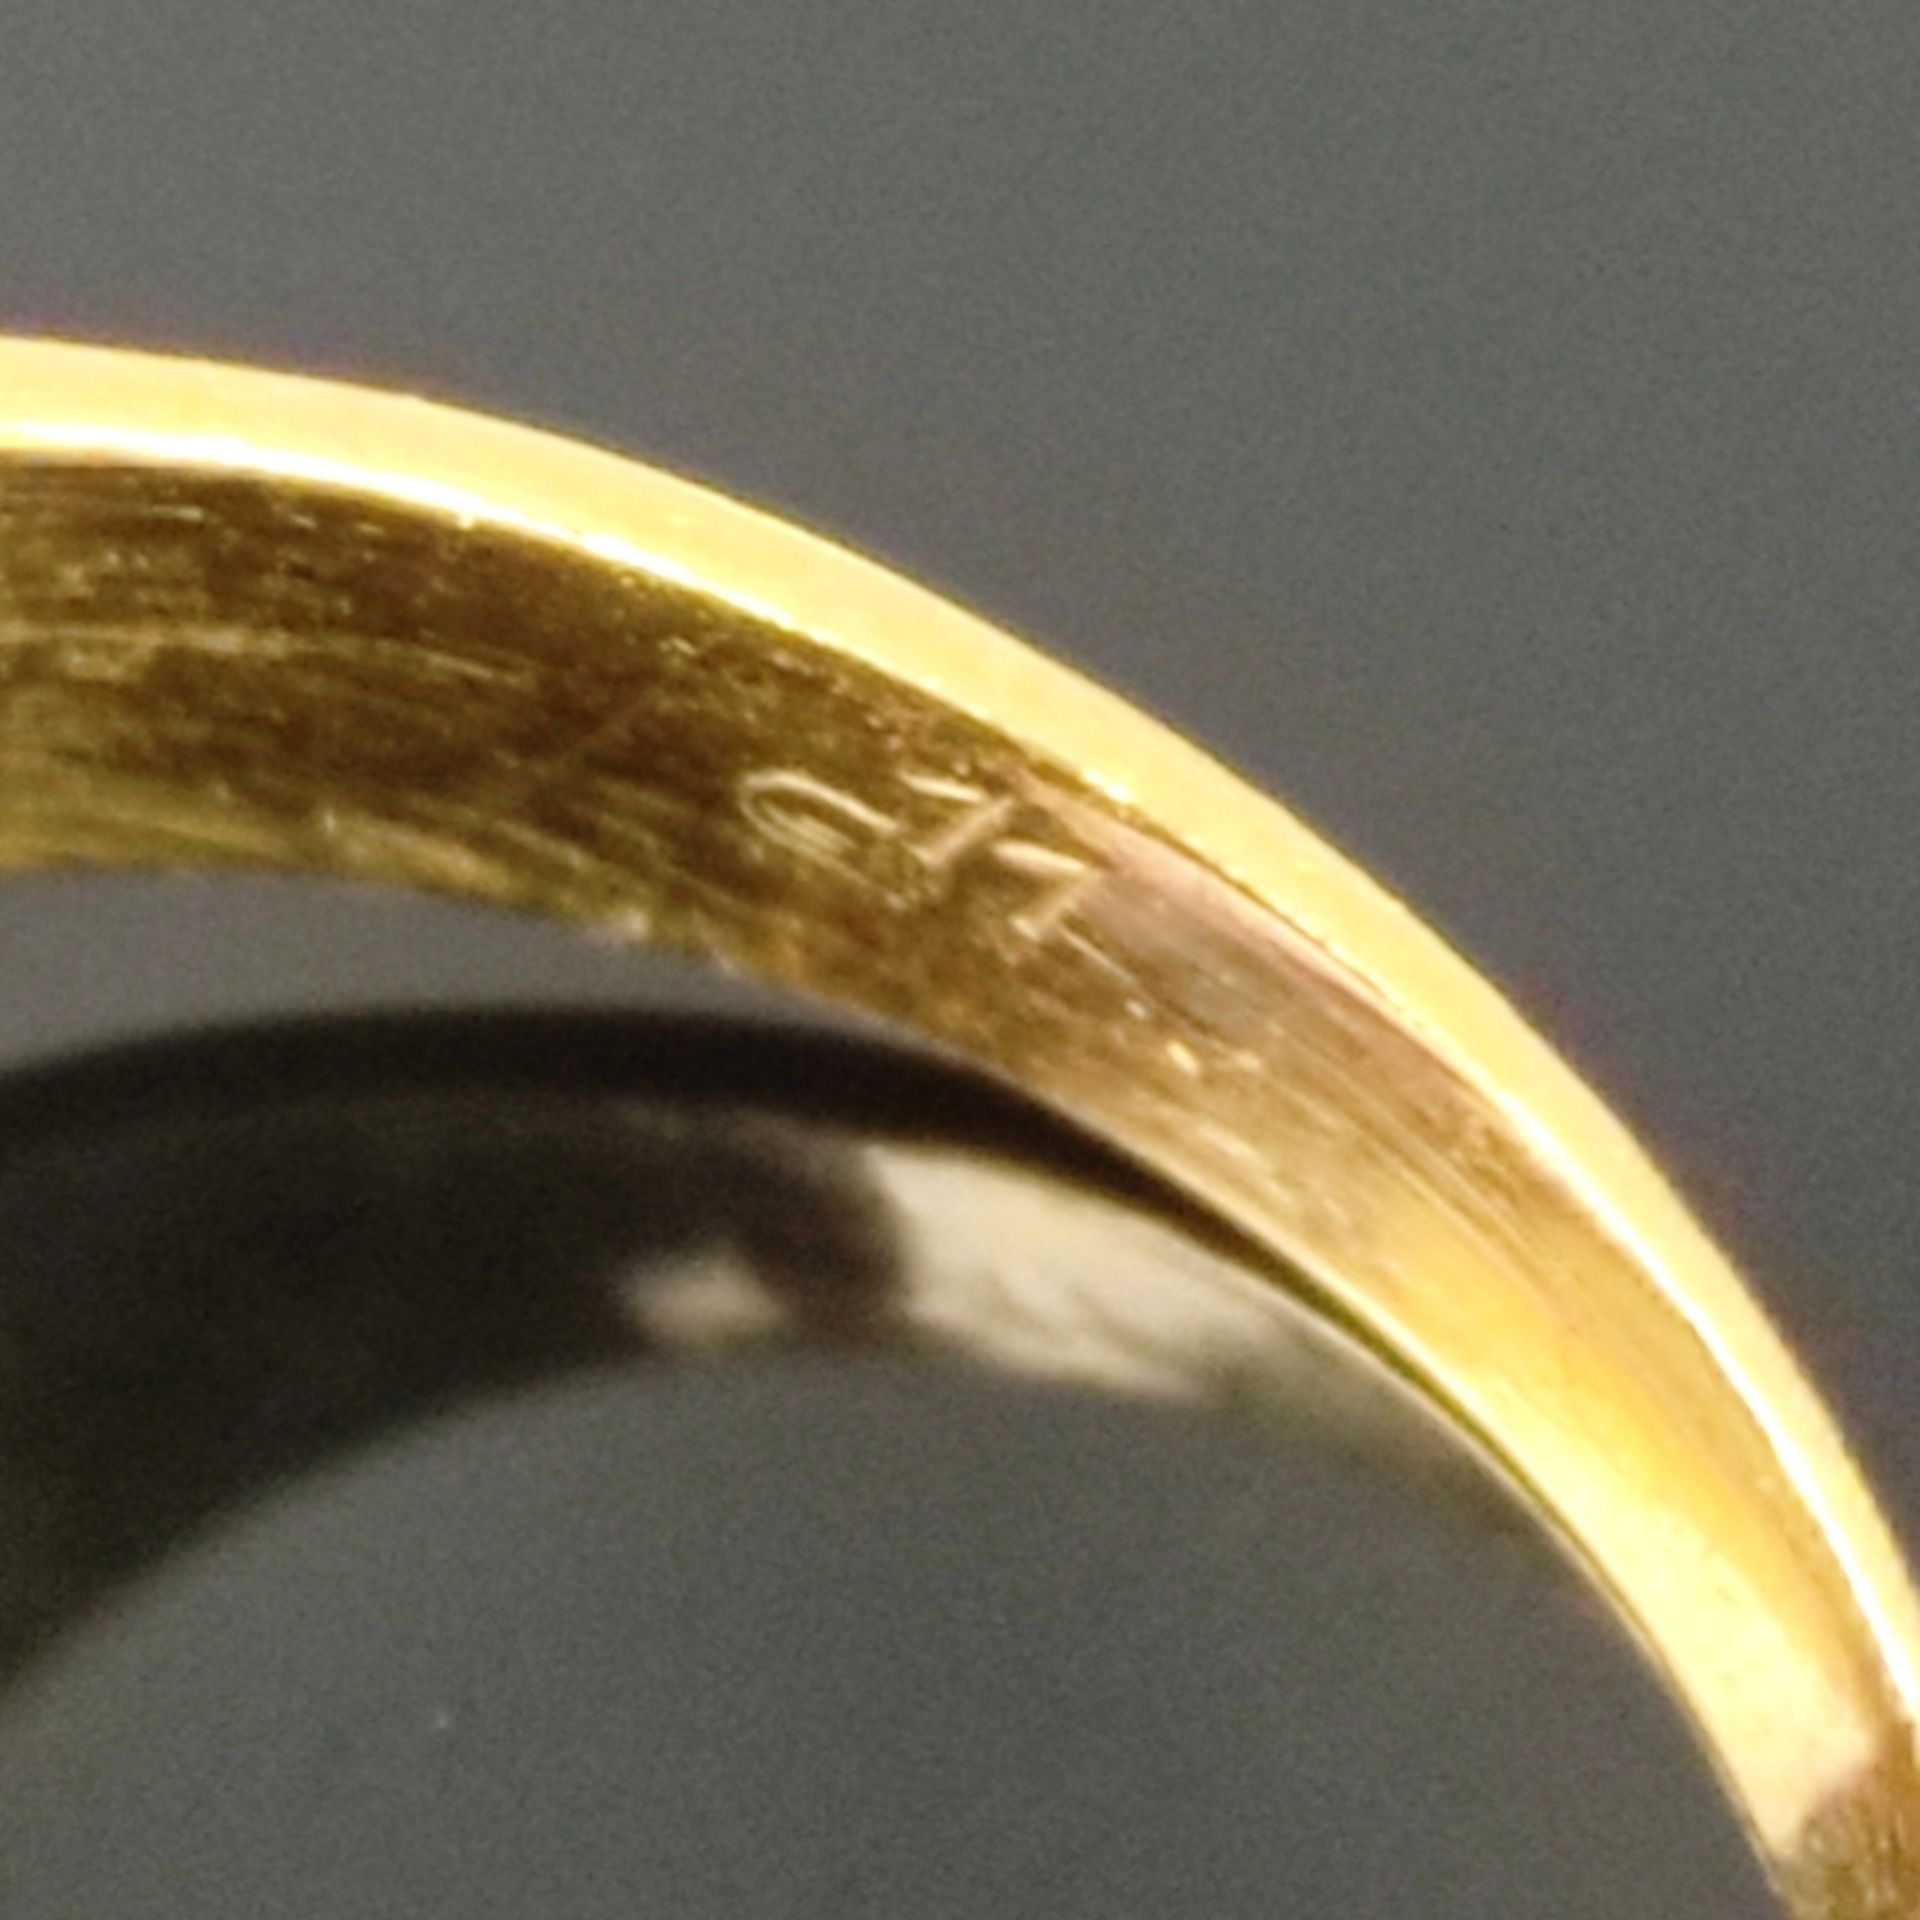 Amethyst-Ring, 585/14K Gelbgold (punziert), Gesamtgewicht 5g, mittig von Krappen eingefasster achte - Bild 4 aus 4